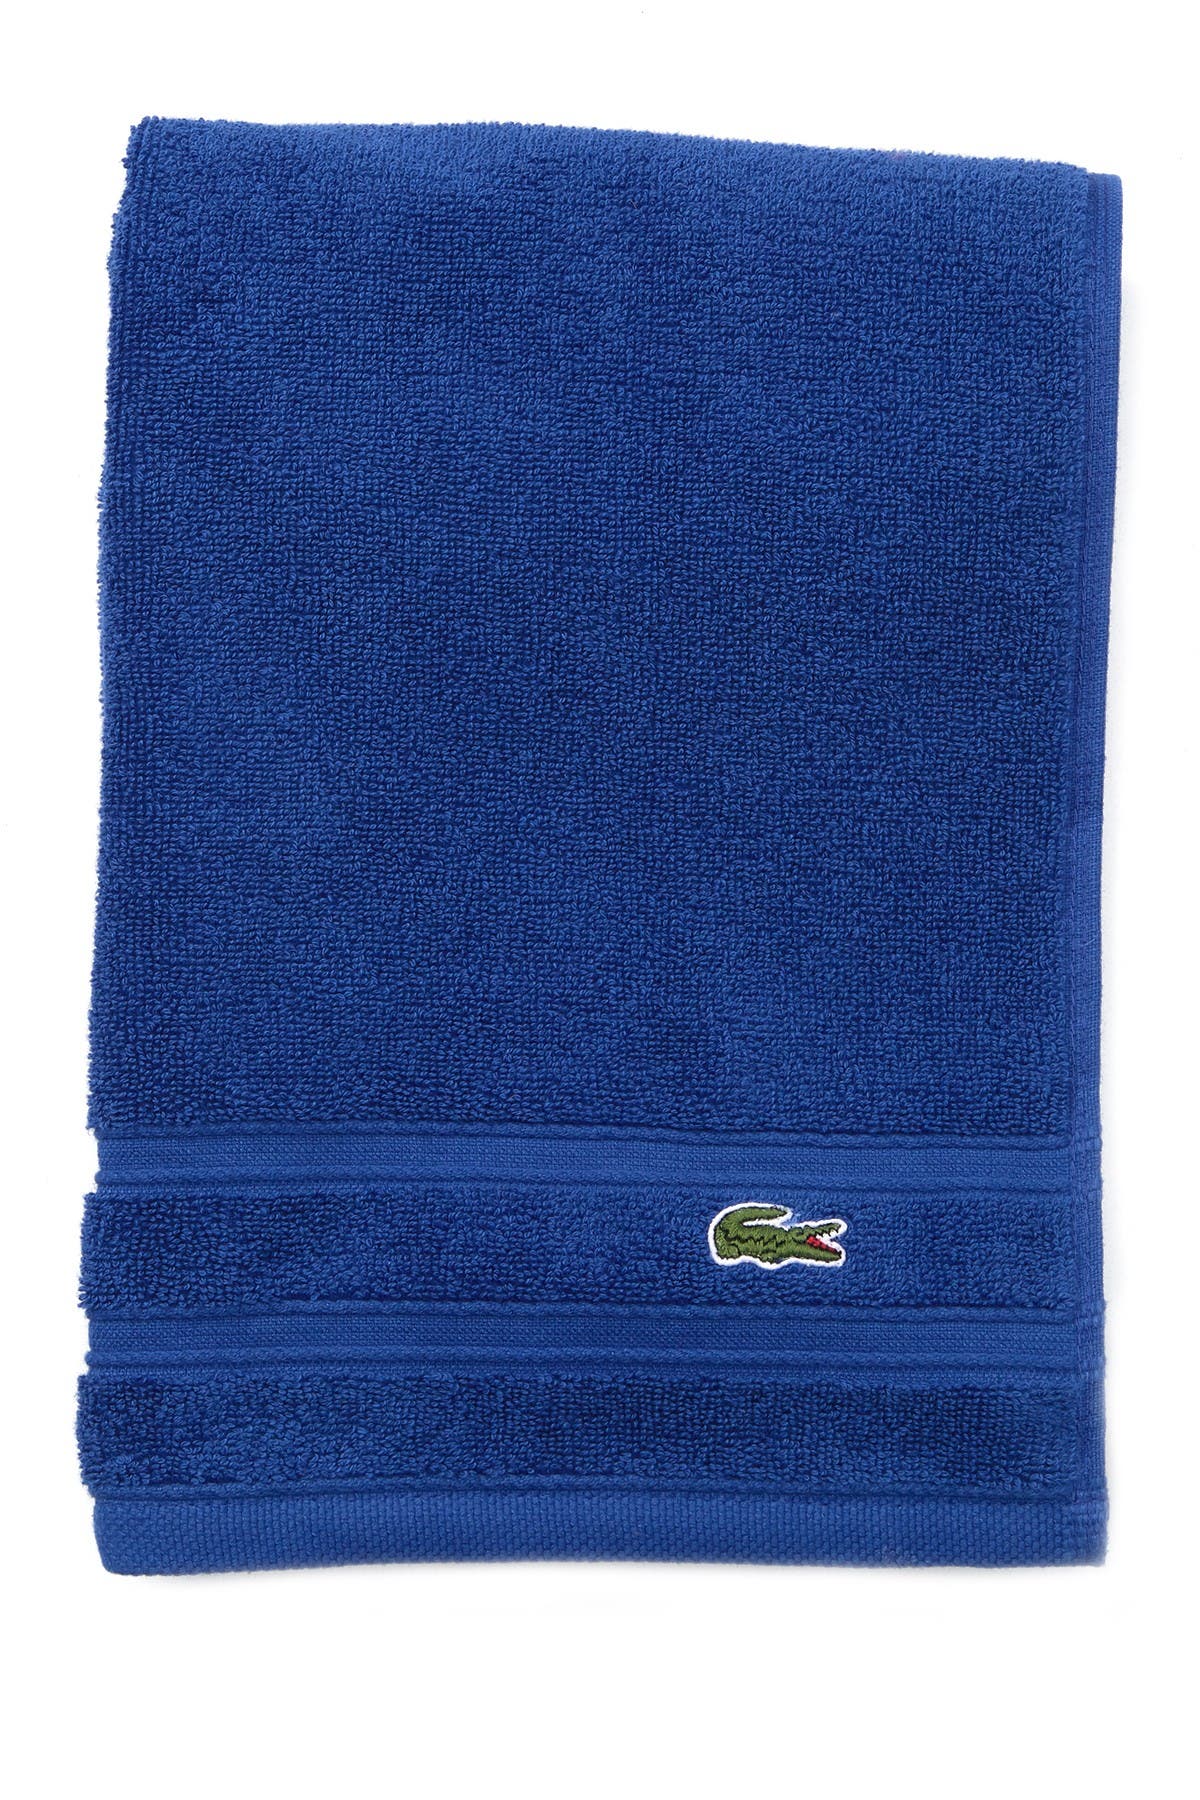 Lacoste | Croc Hand Towel - Surf Blue 